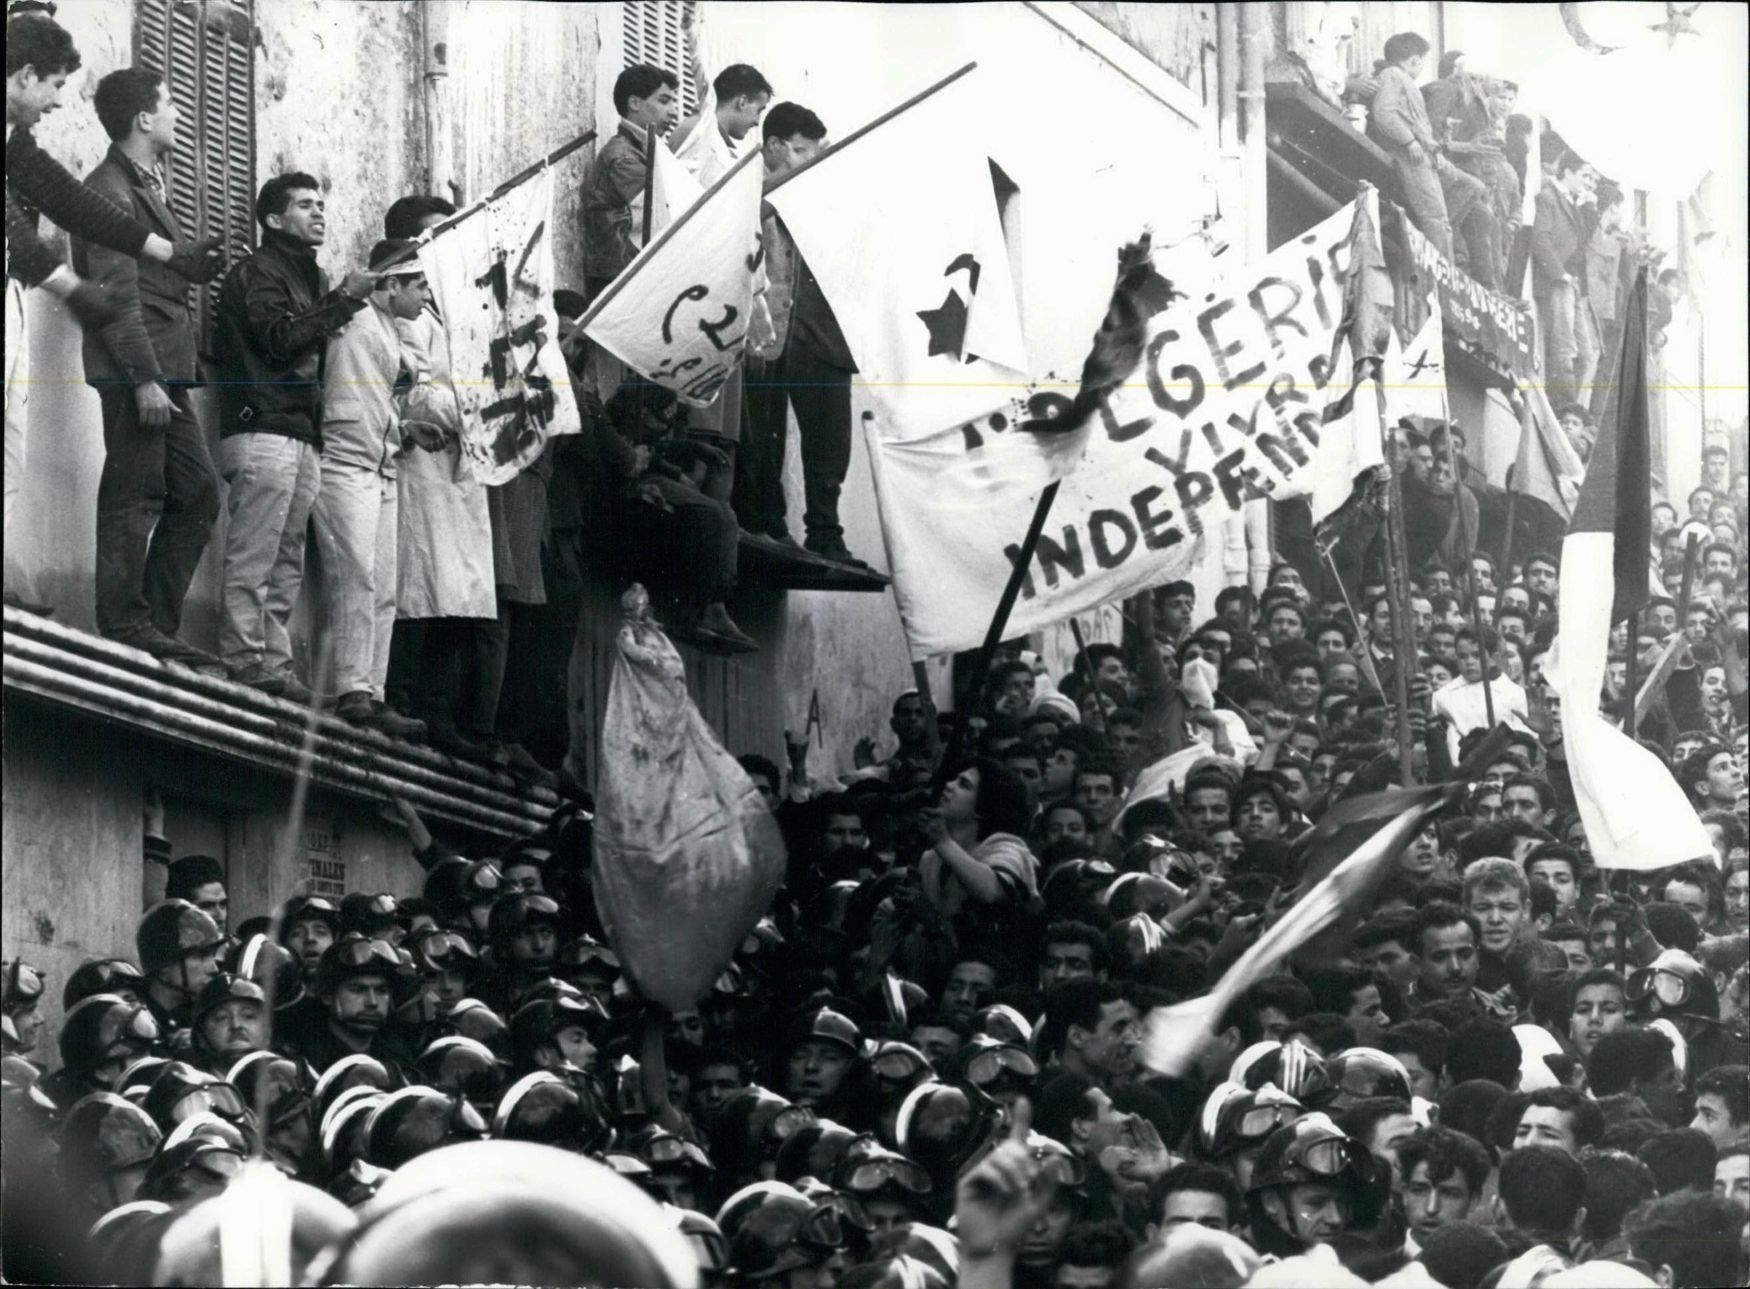 Připomínka alžírské války za nezávislost, Egypt, rok 1974.